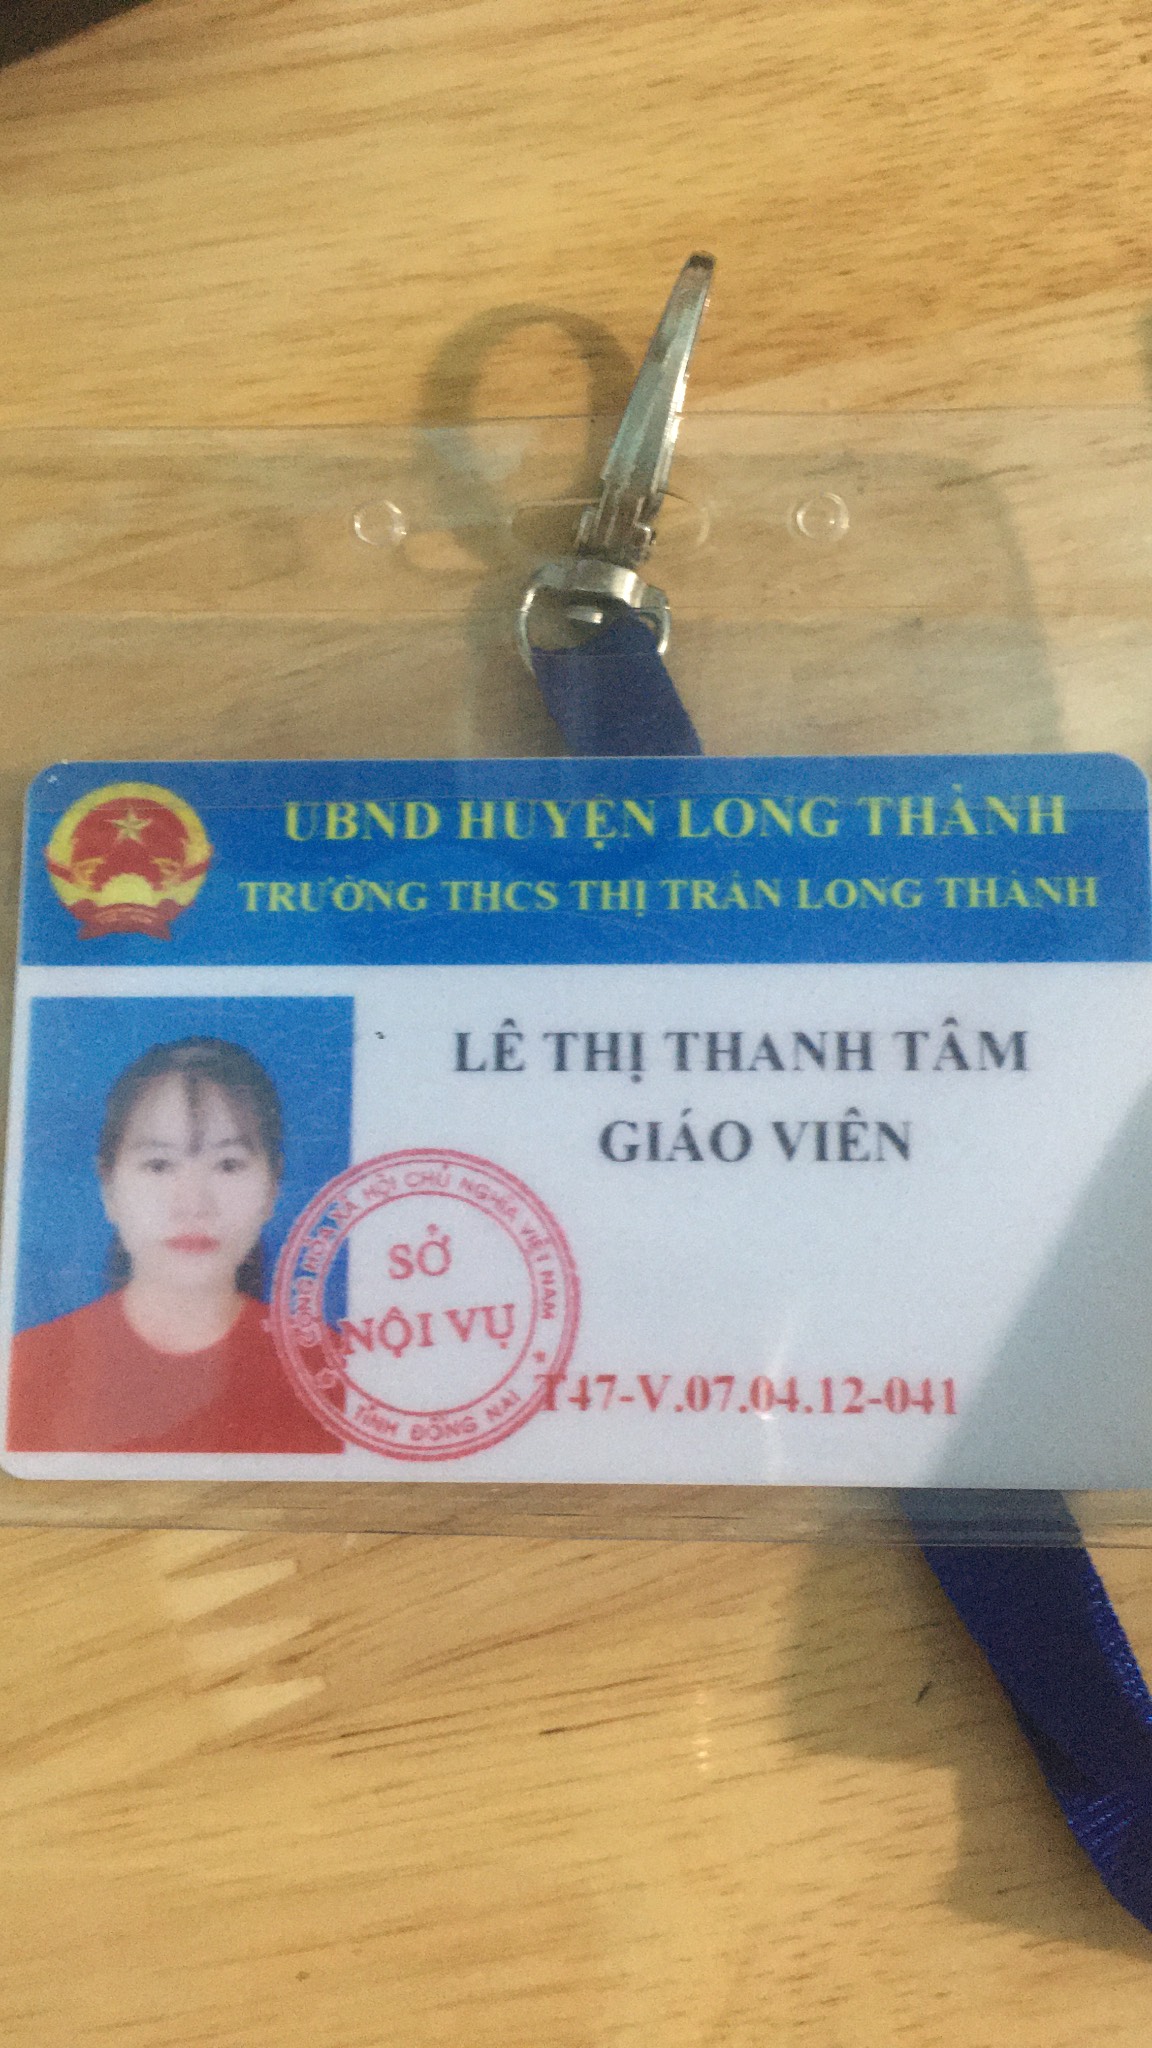 Lê Thị Thanh Tâm